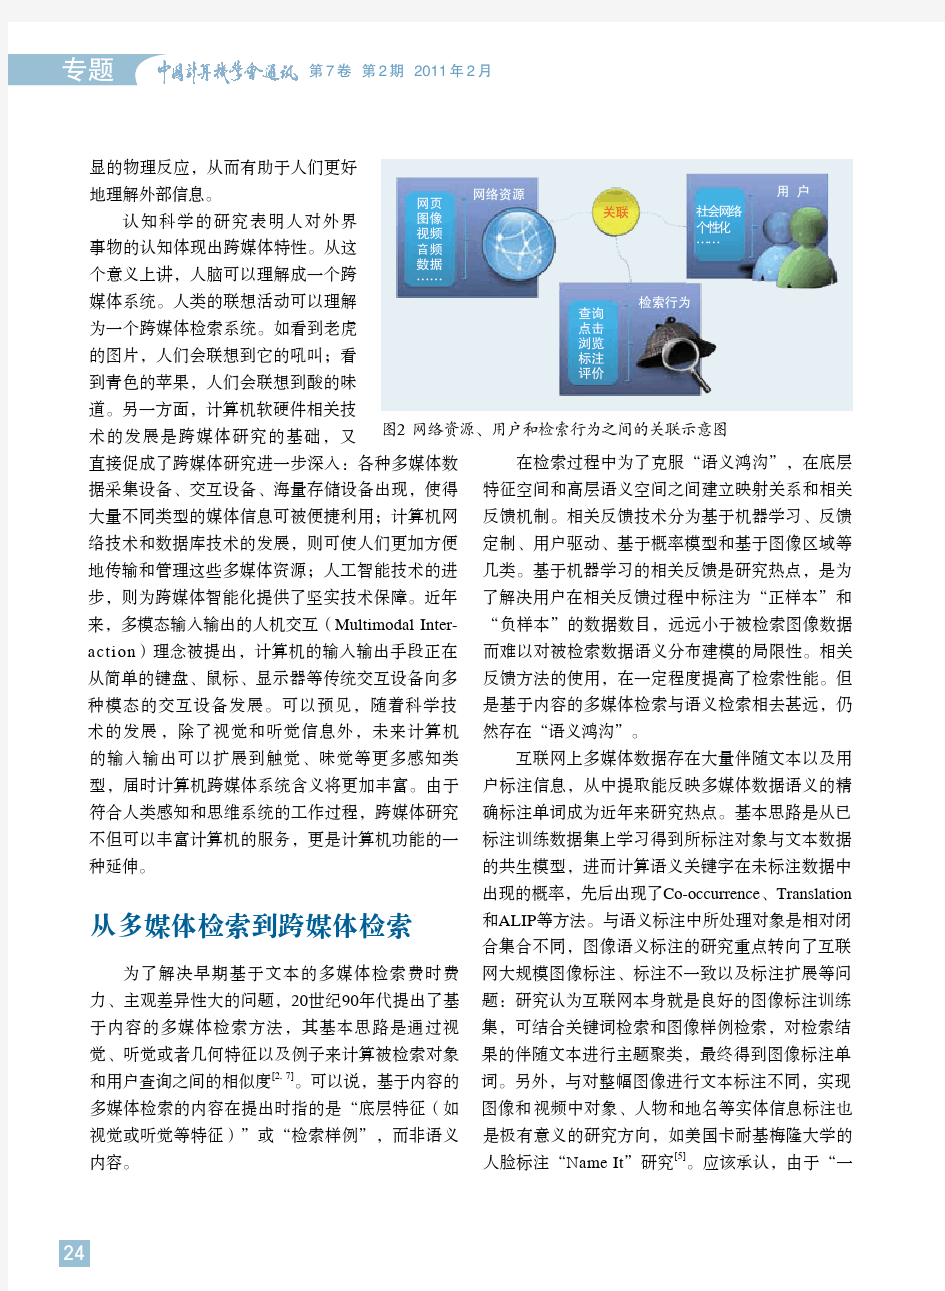 跨媒体分析与检索 - 首页-中国计算机学会信息网